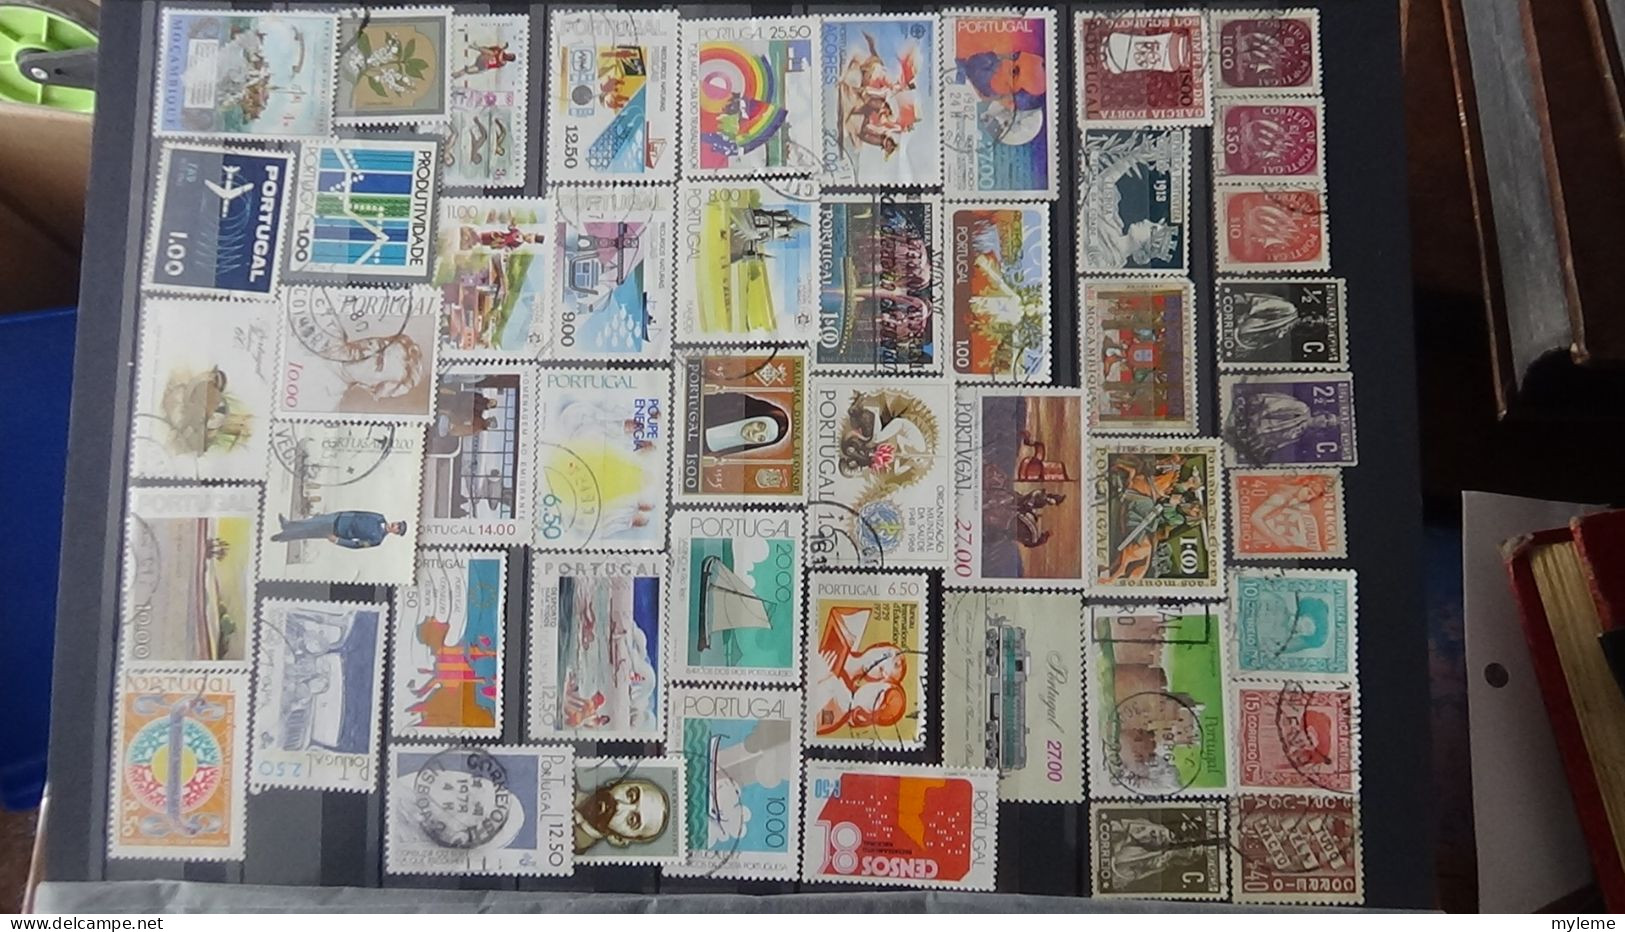 BF21 Ensemble de timbres et blocs oblitérés de divers pays + classiques de France ** avec petits défauts. Cote sympa !!!